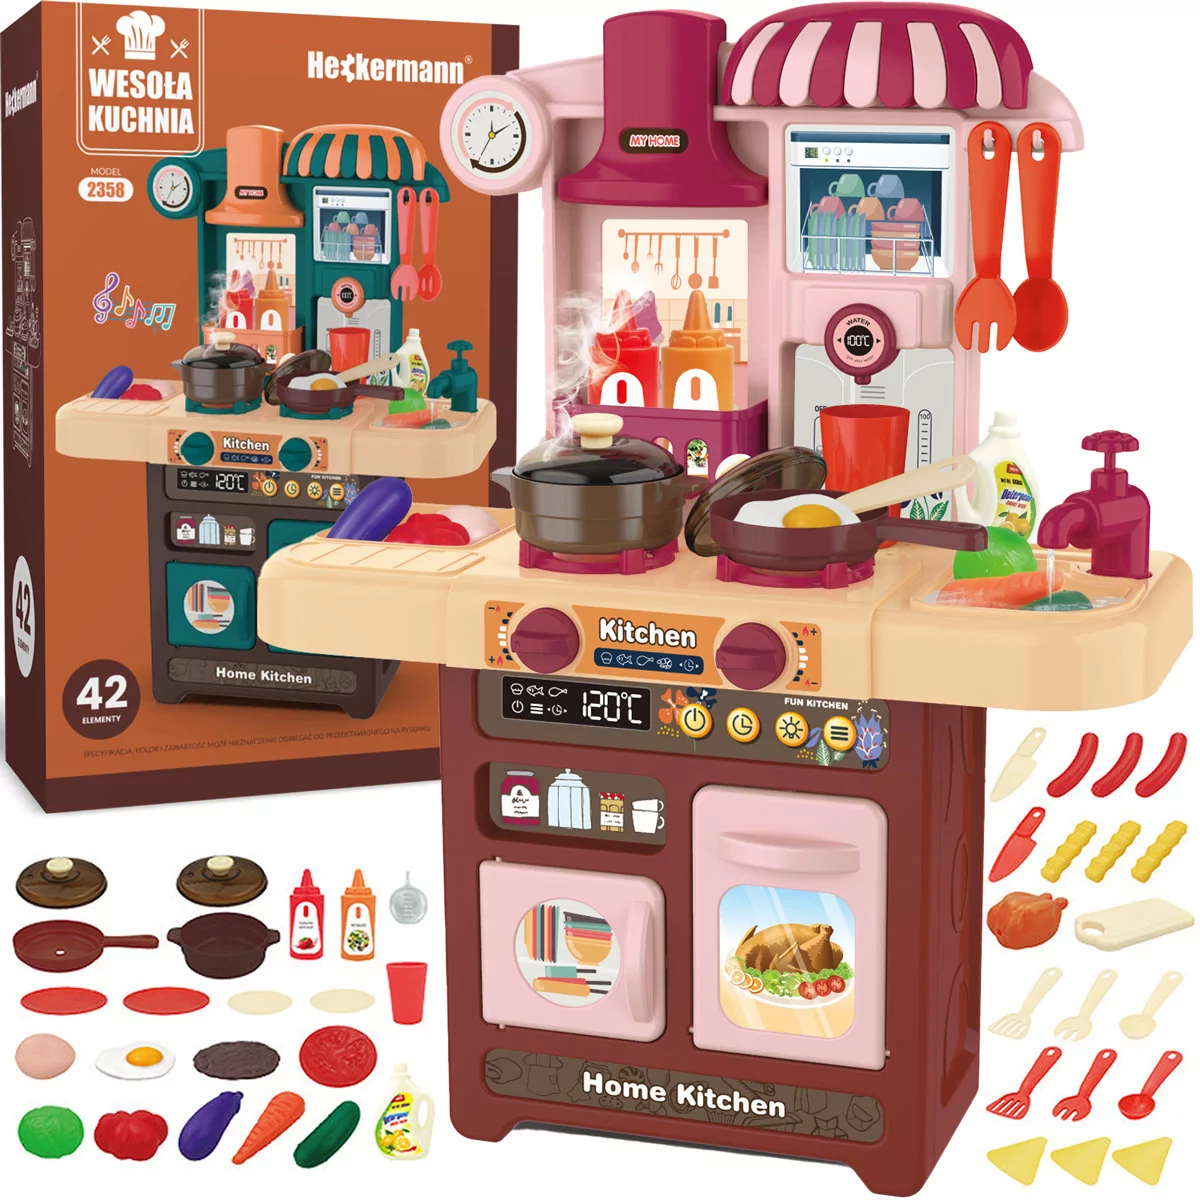 Kuchnia dla dzieci zabawka Heckermann 2358 Różowa